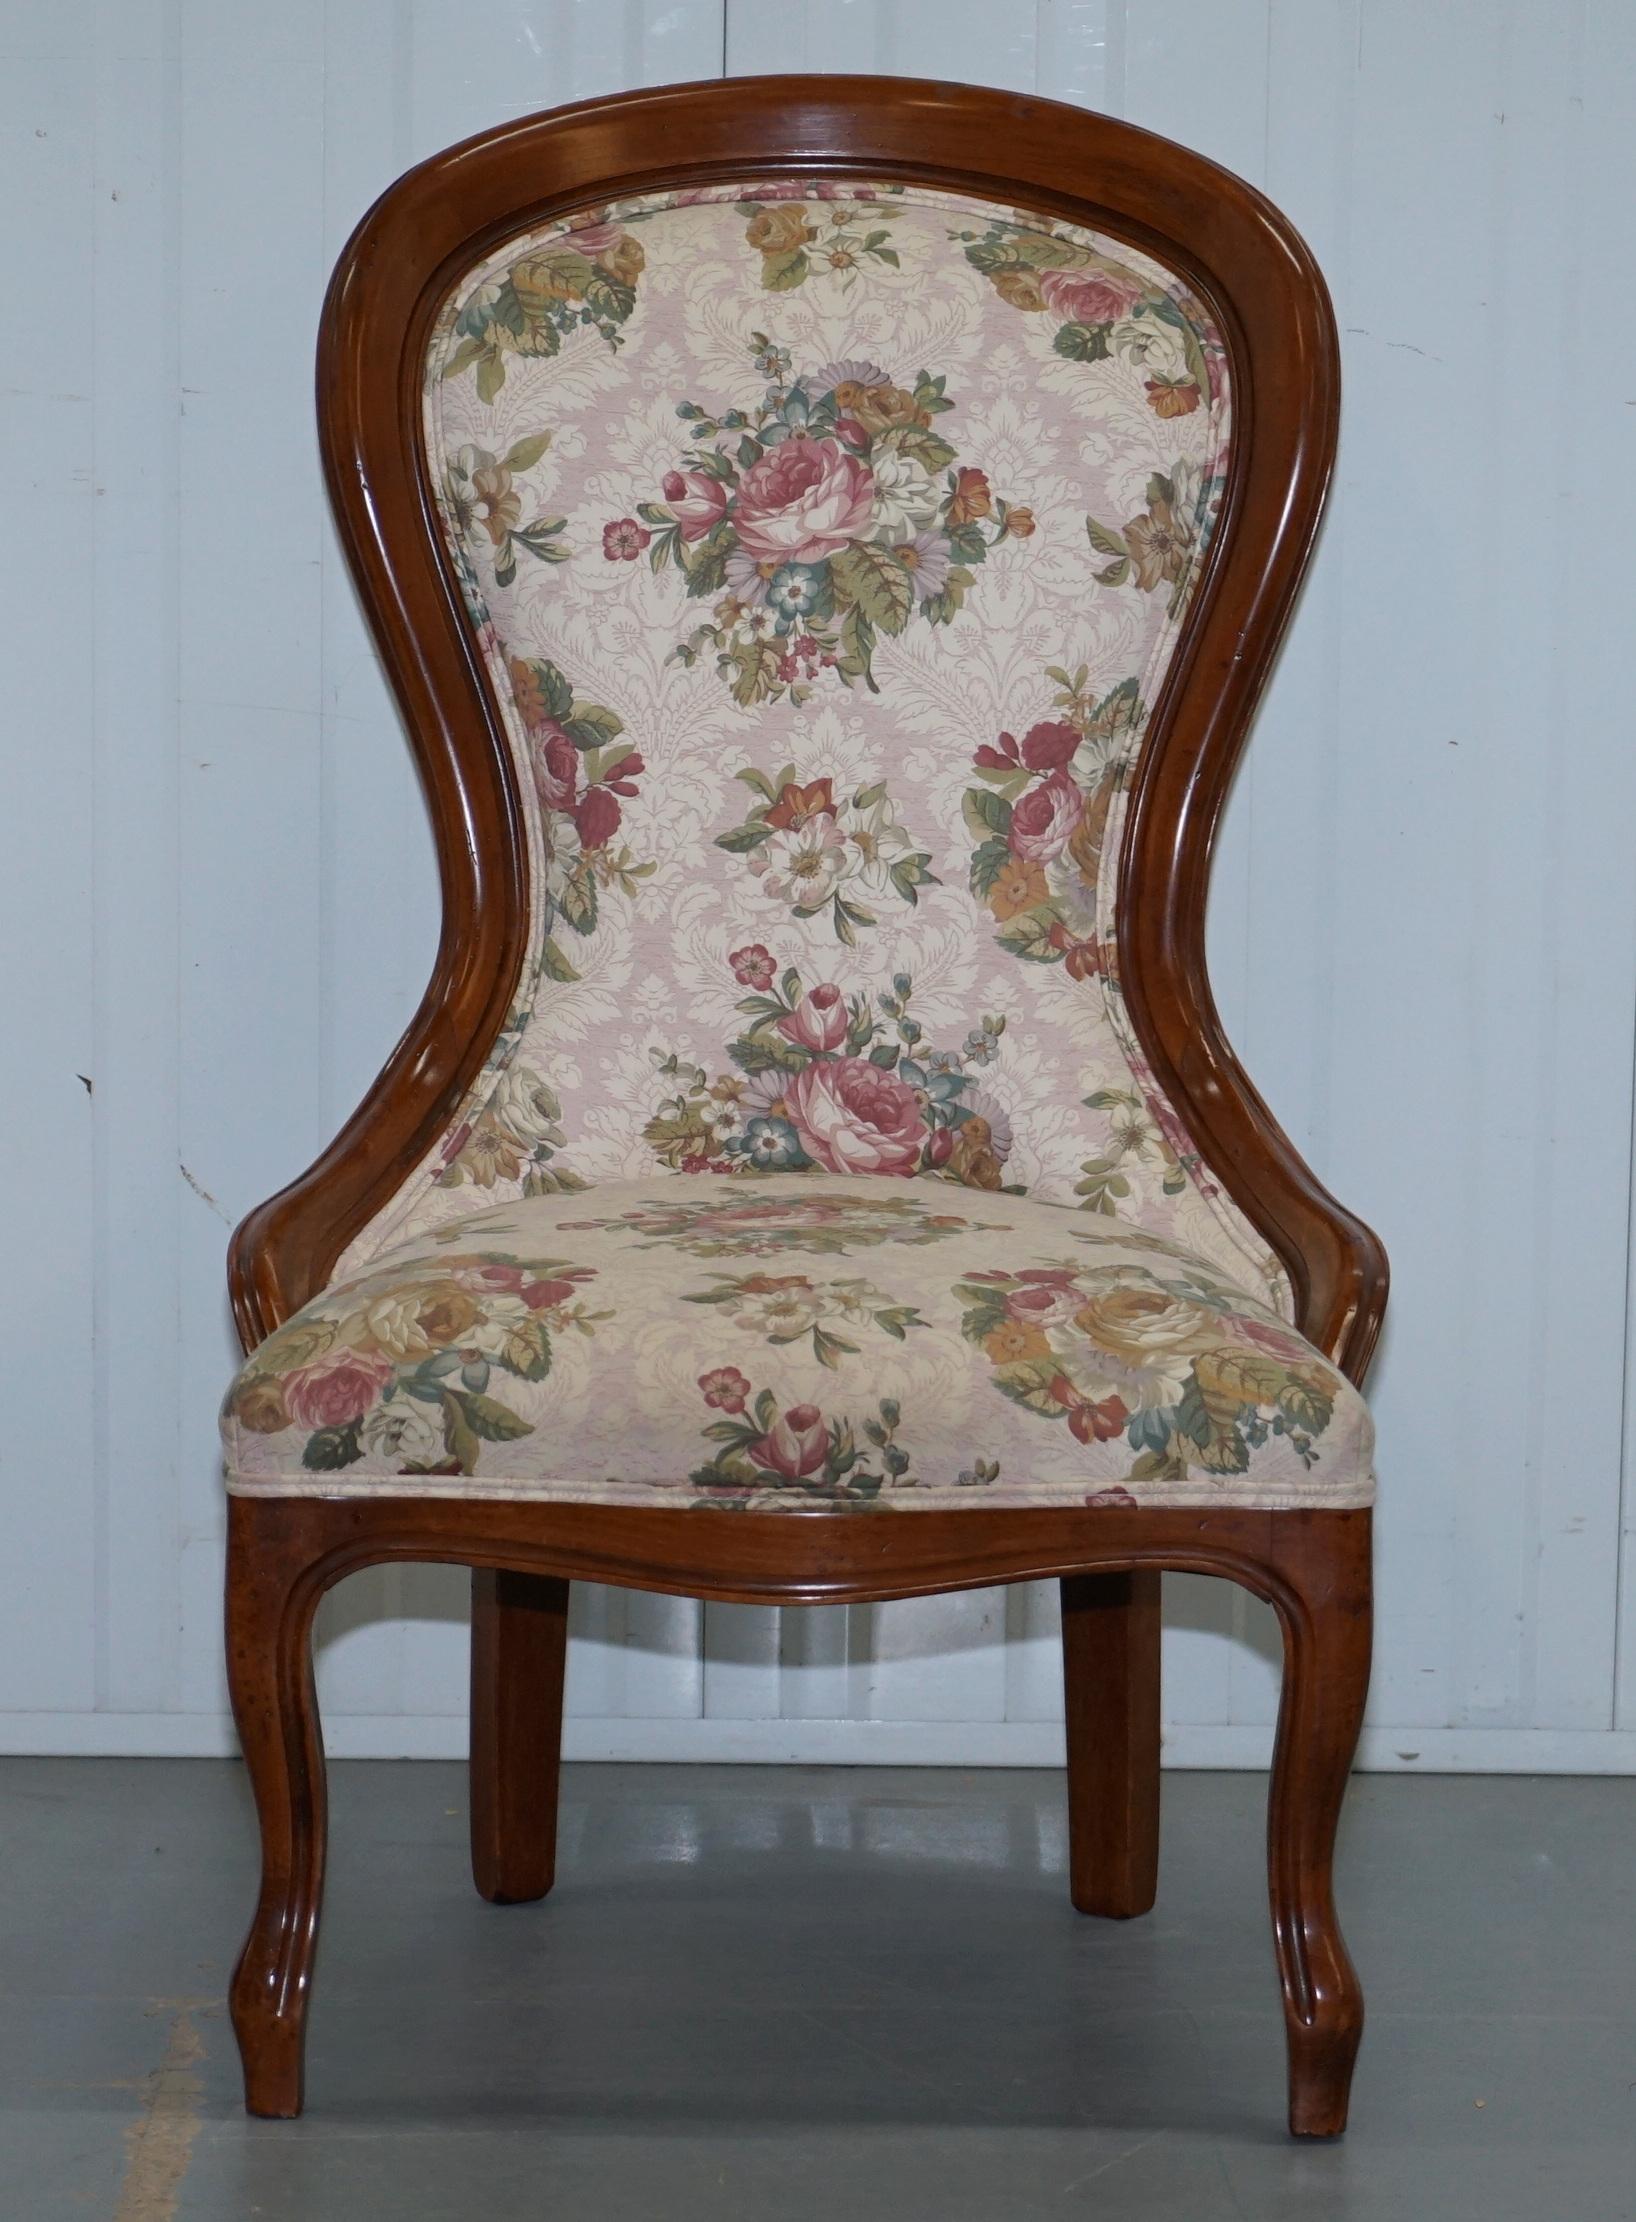 Wir freuen uns:: zum Verkauf dieser atemberaubenden Medaillon zurück massivem Nussbaum viktorianischen Nursing Stuhl mit floralen Polsterung

Eine gut aussehende dekorative und sehr komfortable kleine Stuhl in ausgezeichnetem Zustand im gesamten::